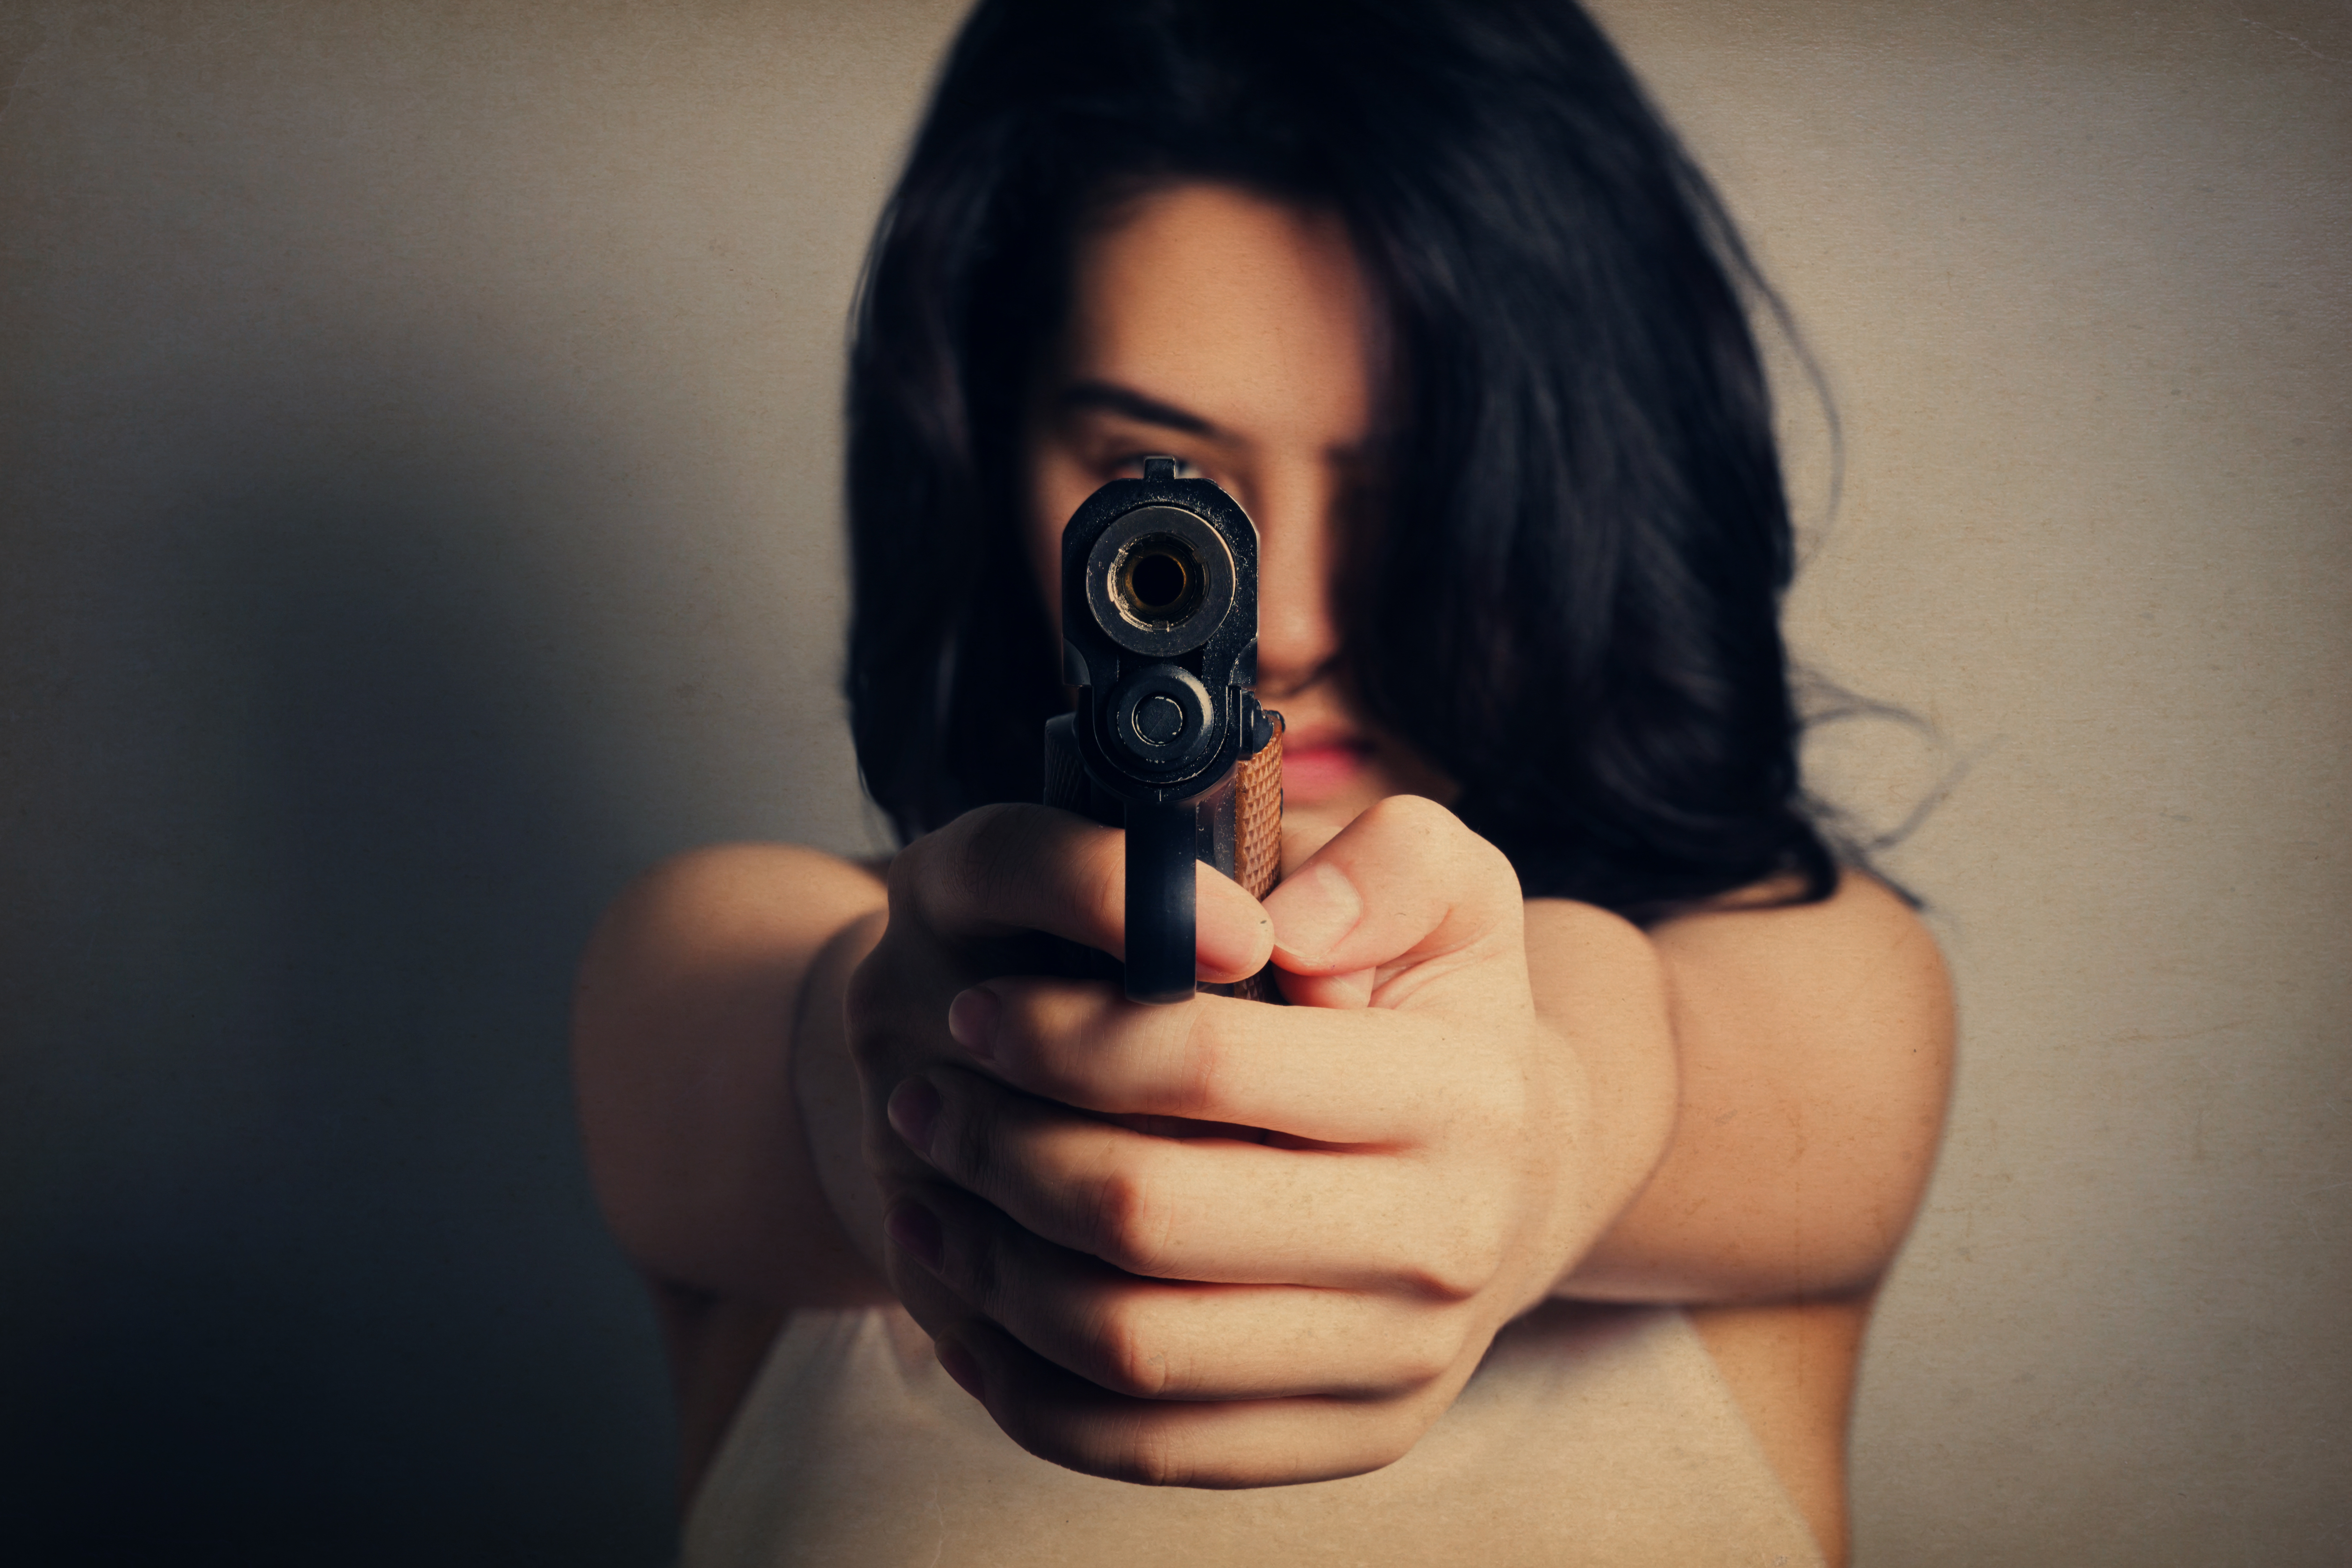 Mujer apuntando con una pistola | Fuente: Shutterstock